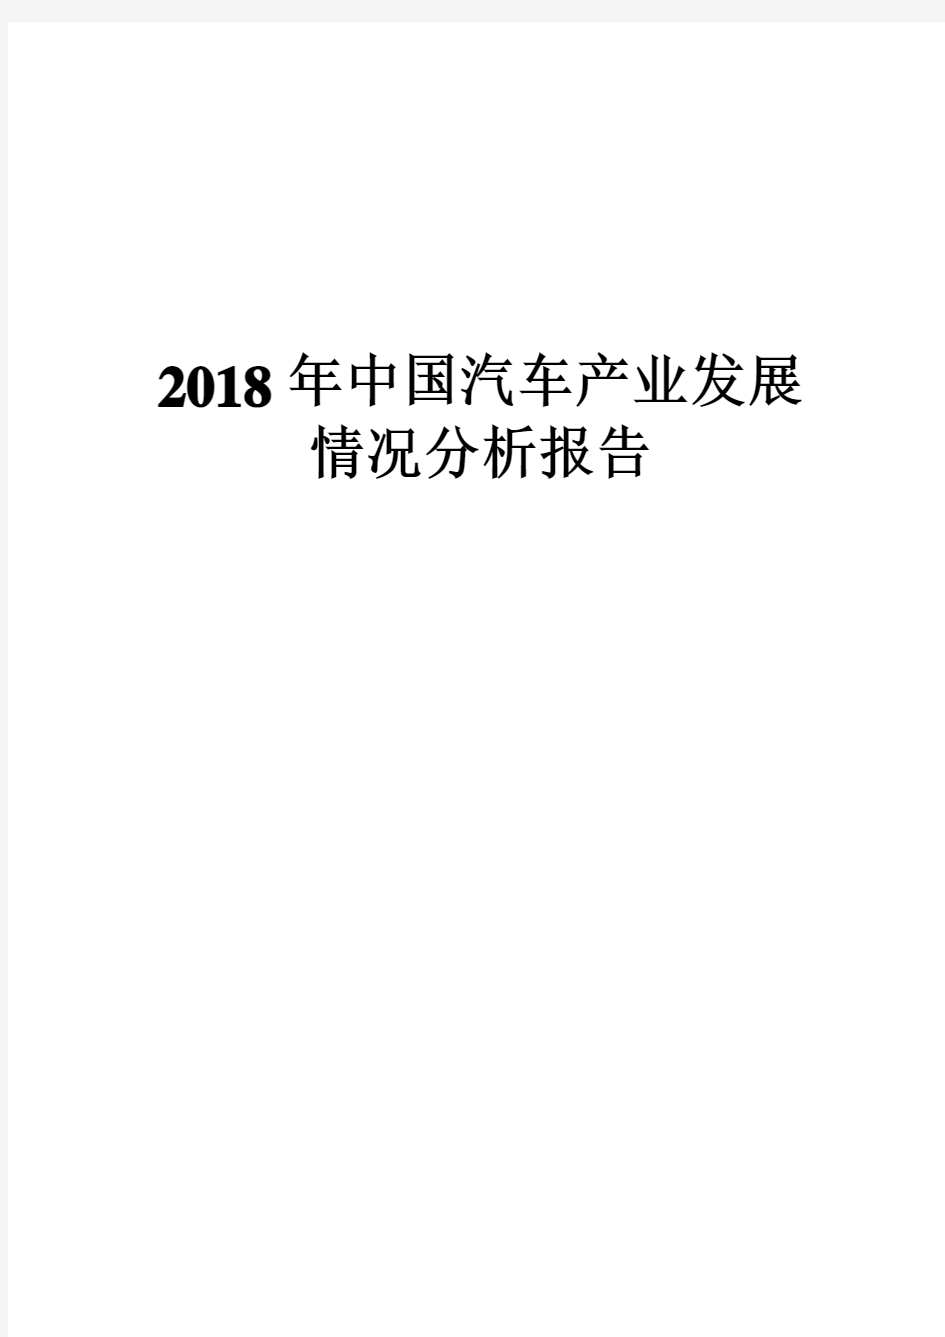 2018年中国汽车产业发展情况分析报告